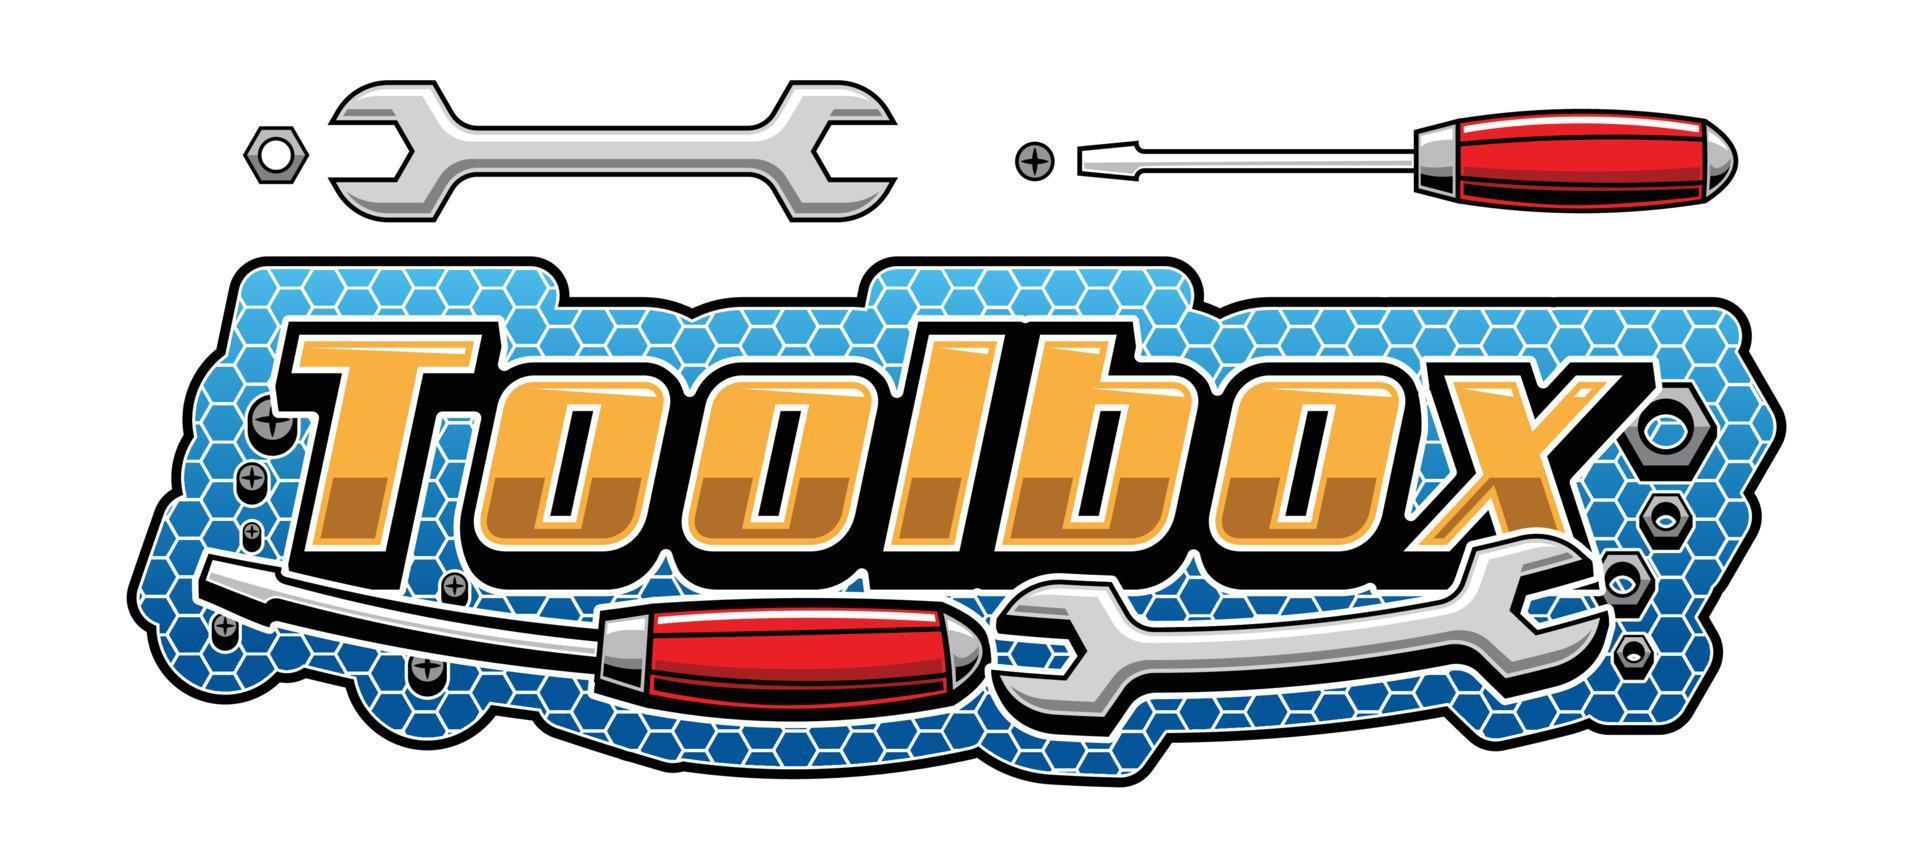 Toolbox-Logo für Werkstatt oder Rennteam vektor